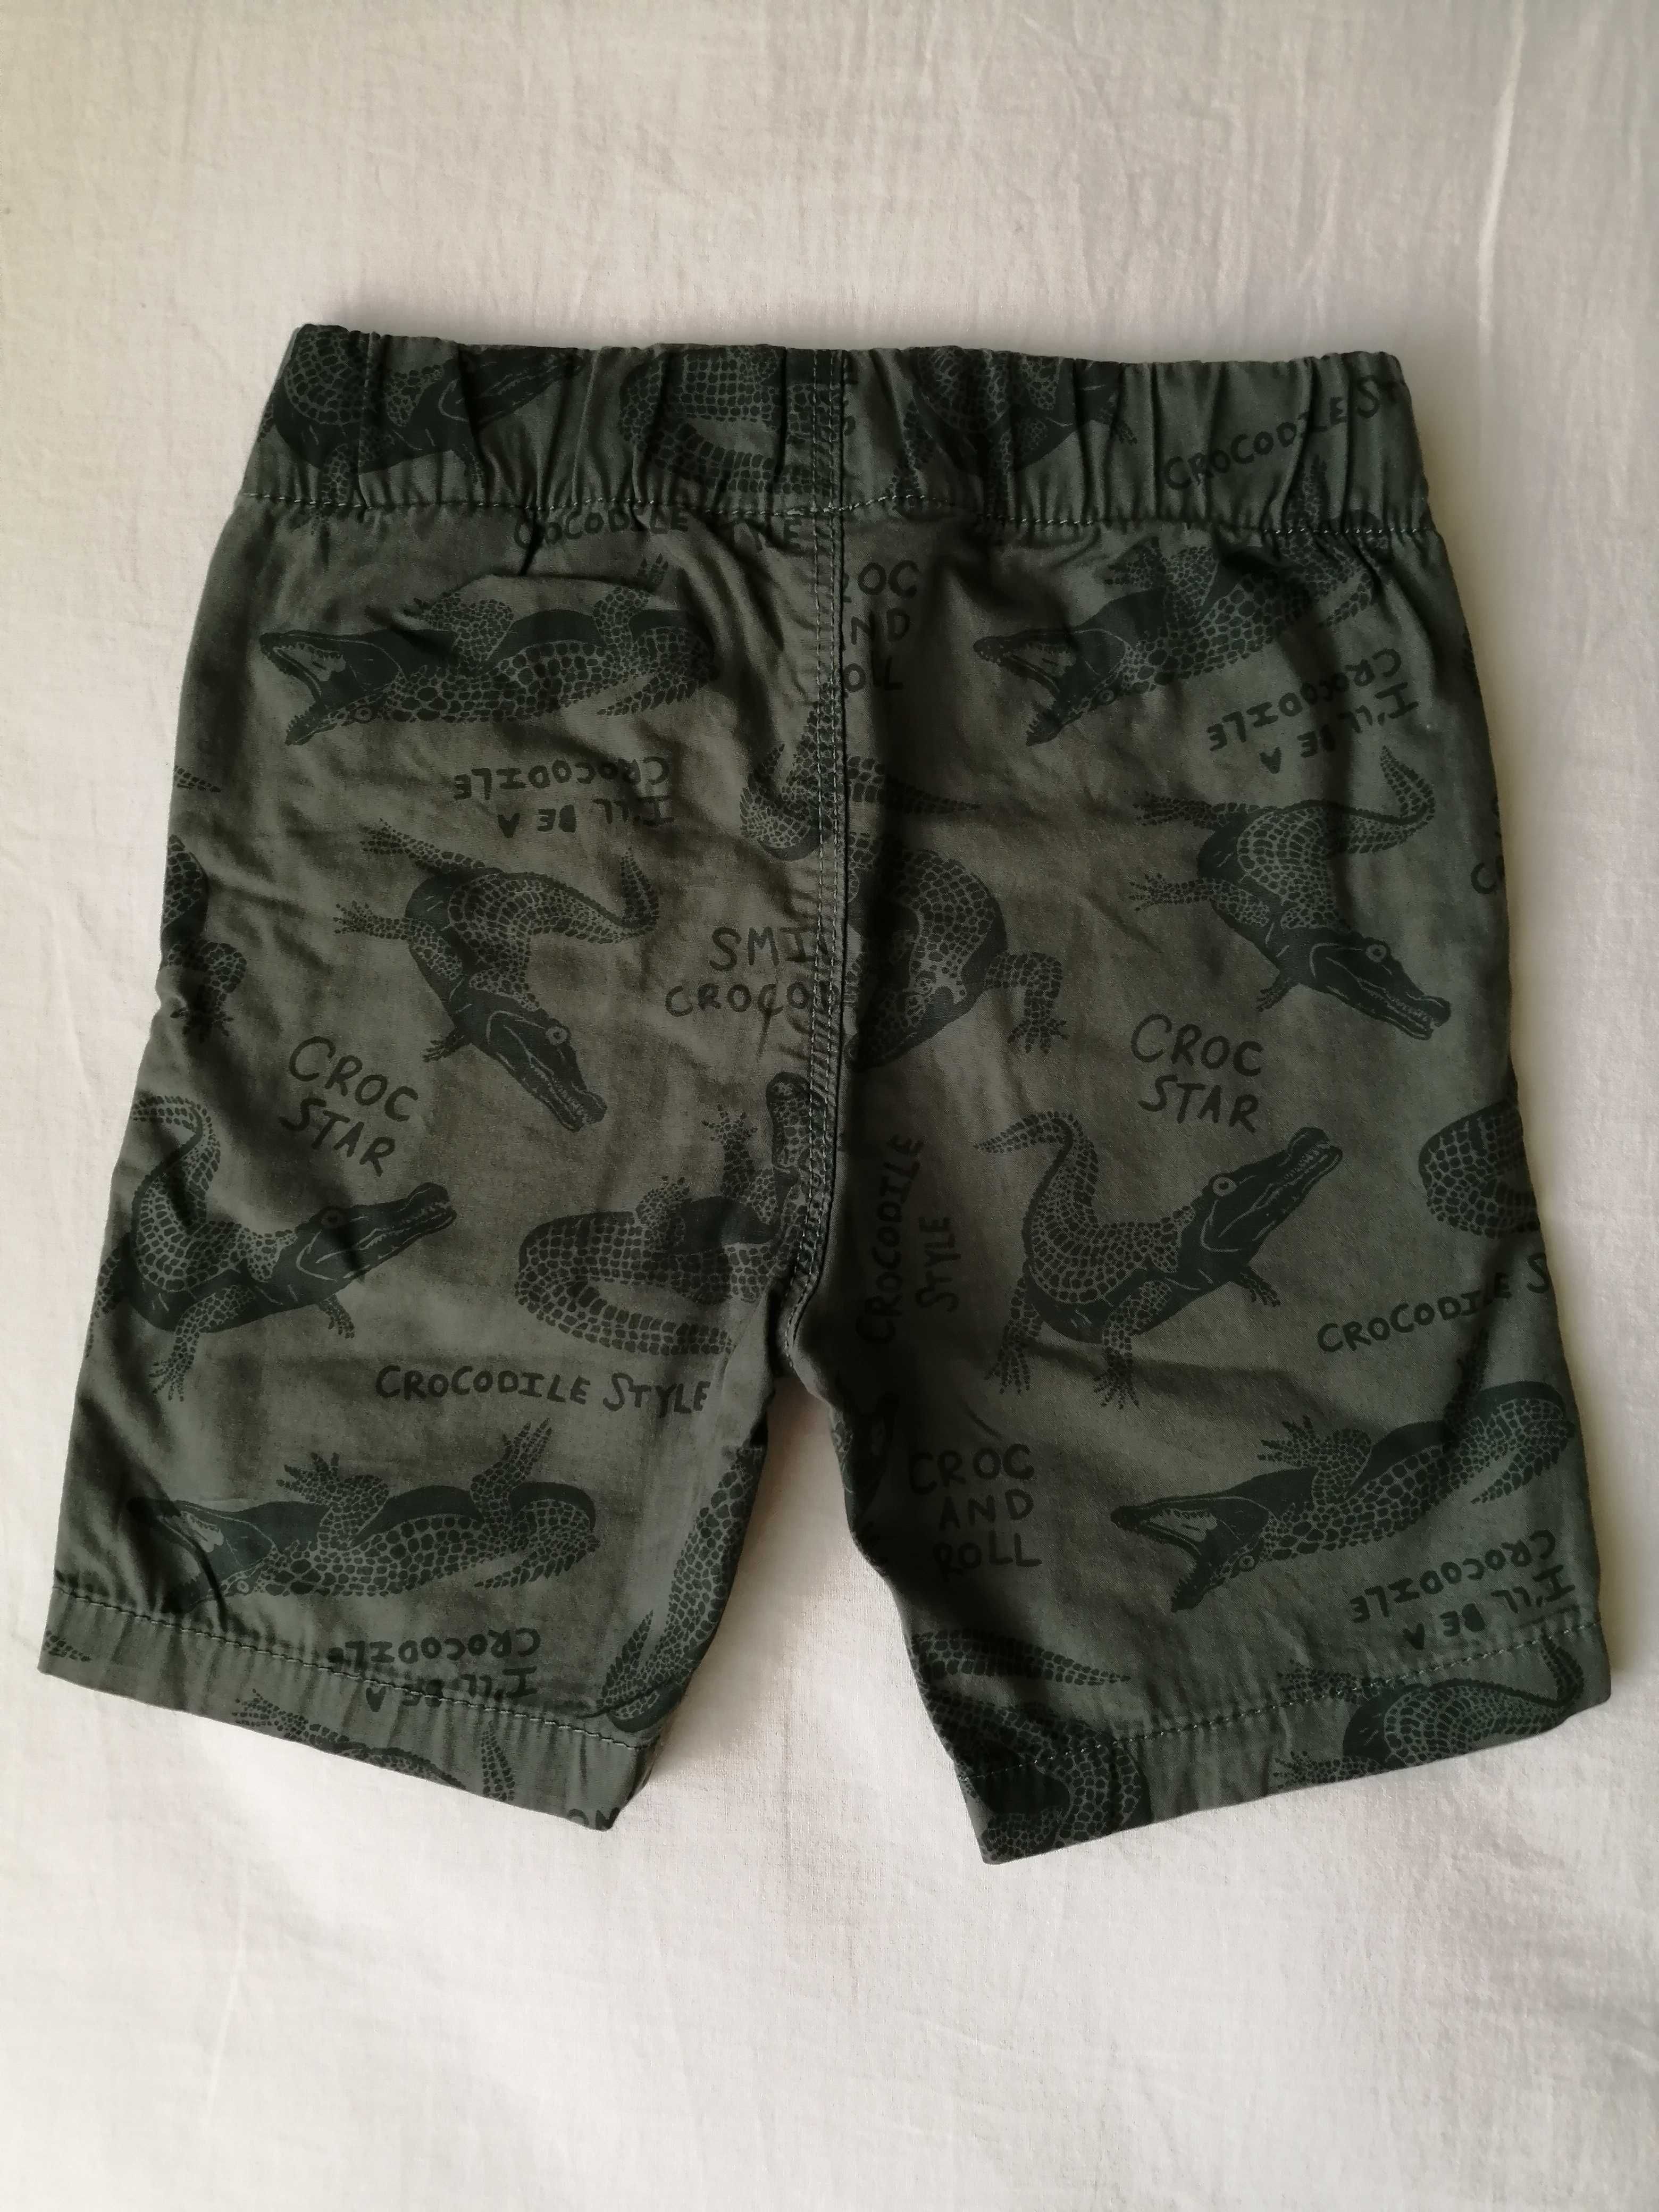 Къси панталонки и бански за момче, H&M, George, 92-104 см., 1 1/2-4 г.